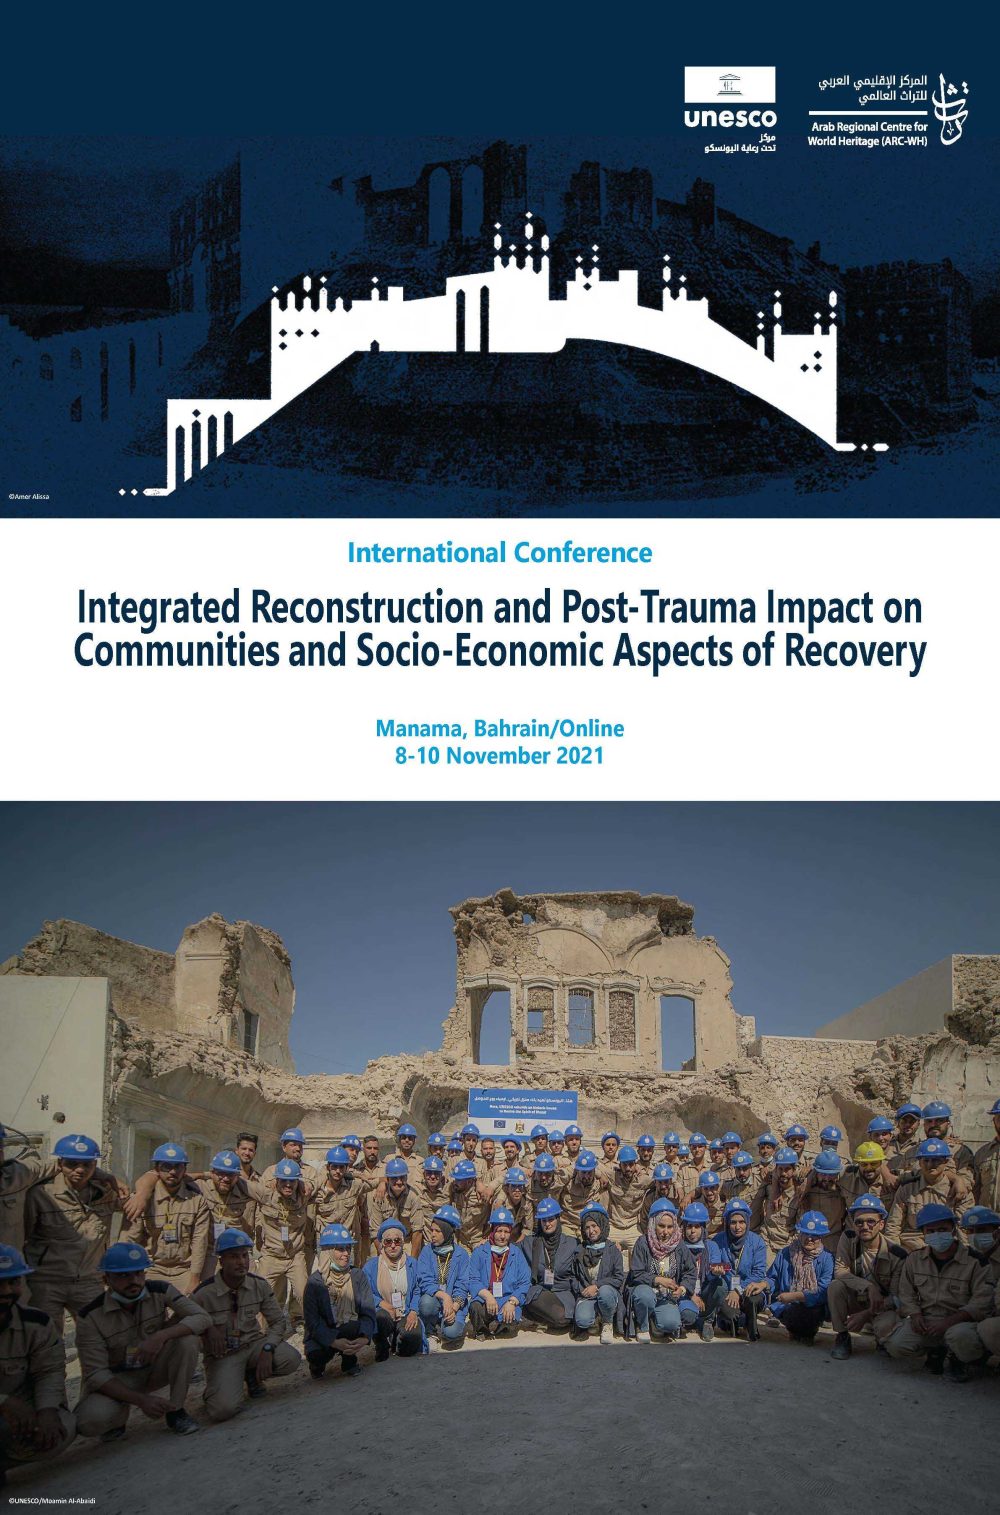 Conférence internationale sur la reconstruction intégrée et l’impact post-traumatique sur les communautés et les aspects socio-économiques du rétablissement